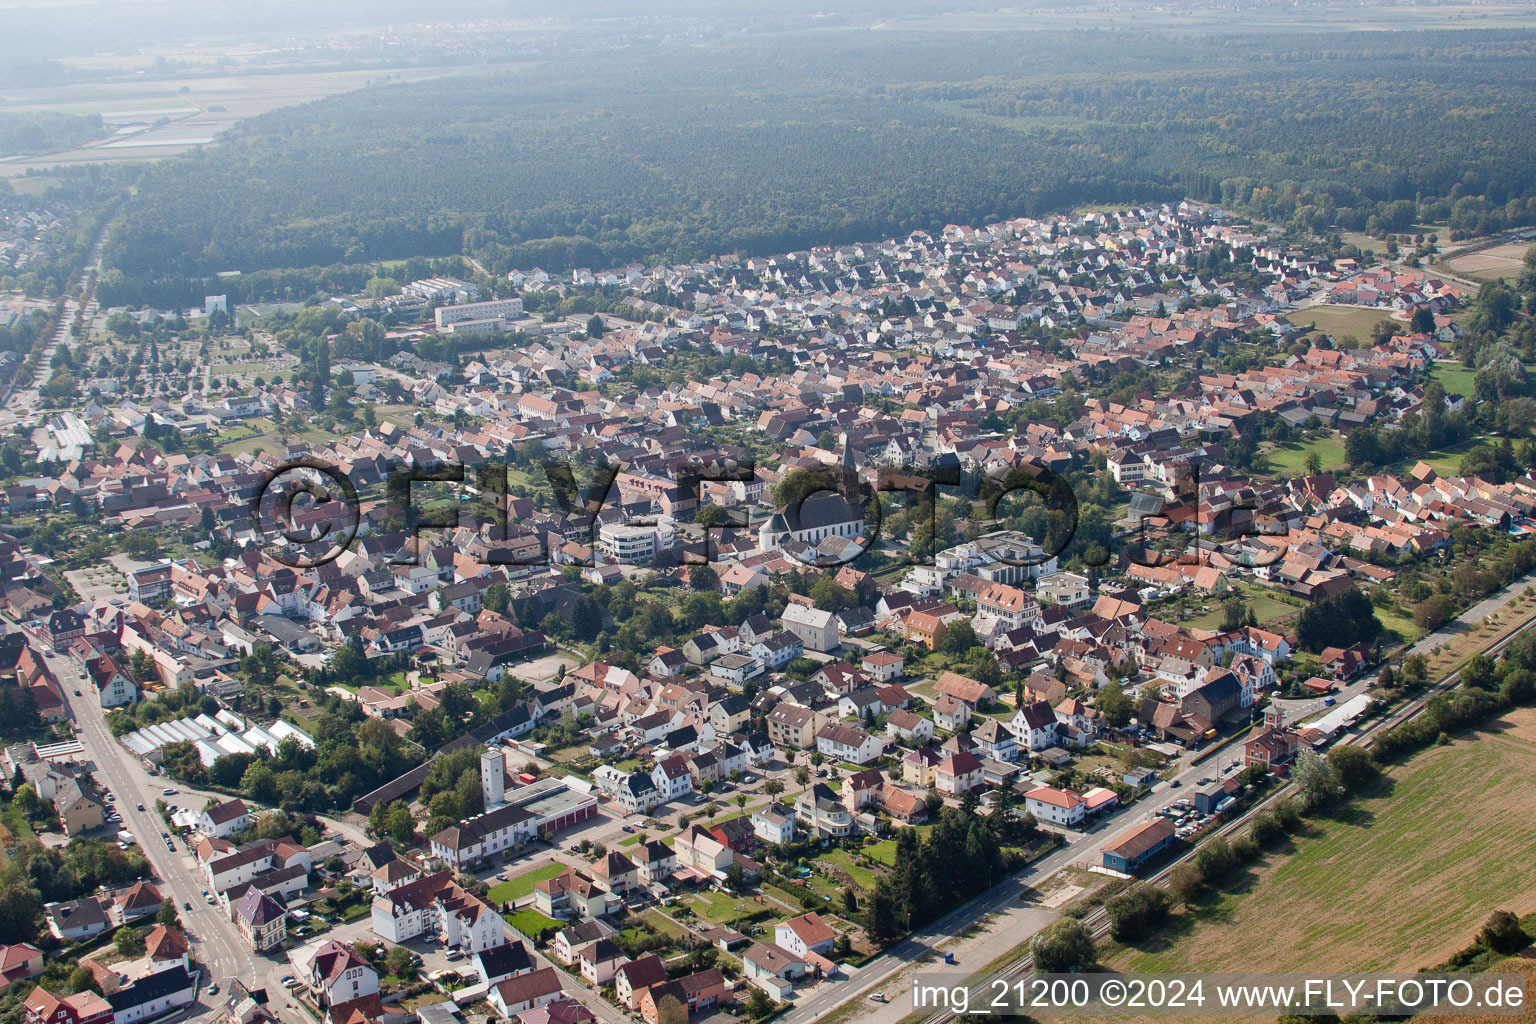 Luftbild von Ortsansicht der Straßen und Häuser der Wohngebiete in Rülzheim im Bundesland Rheinland-Pfalz, Deutschland